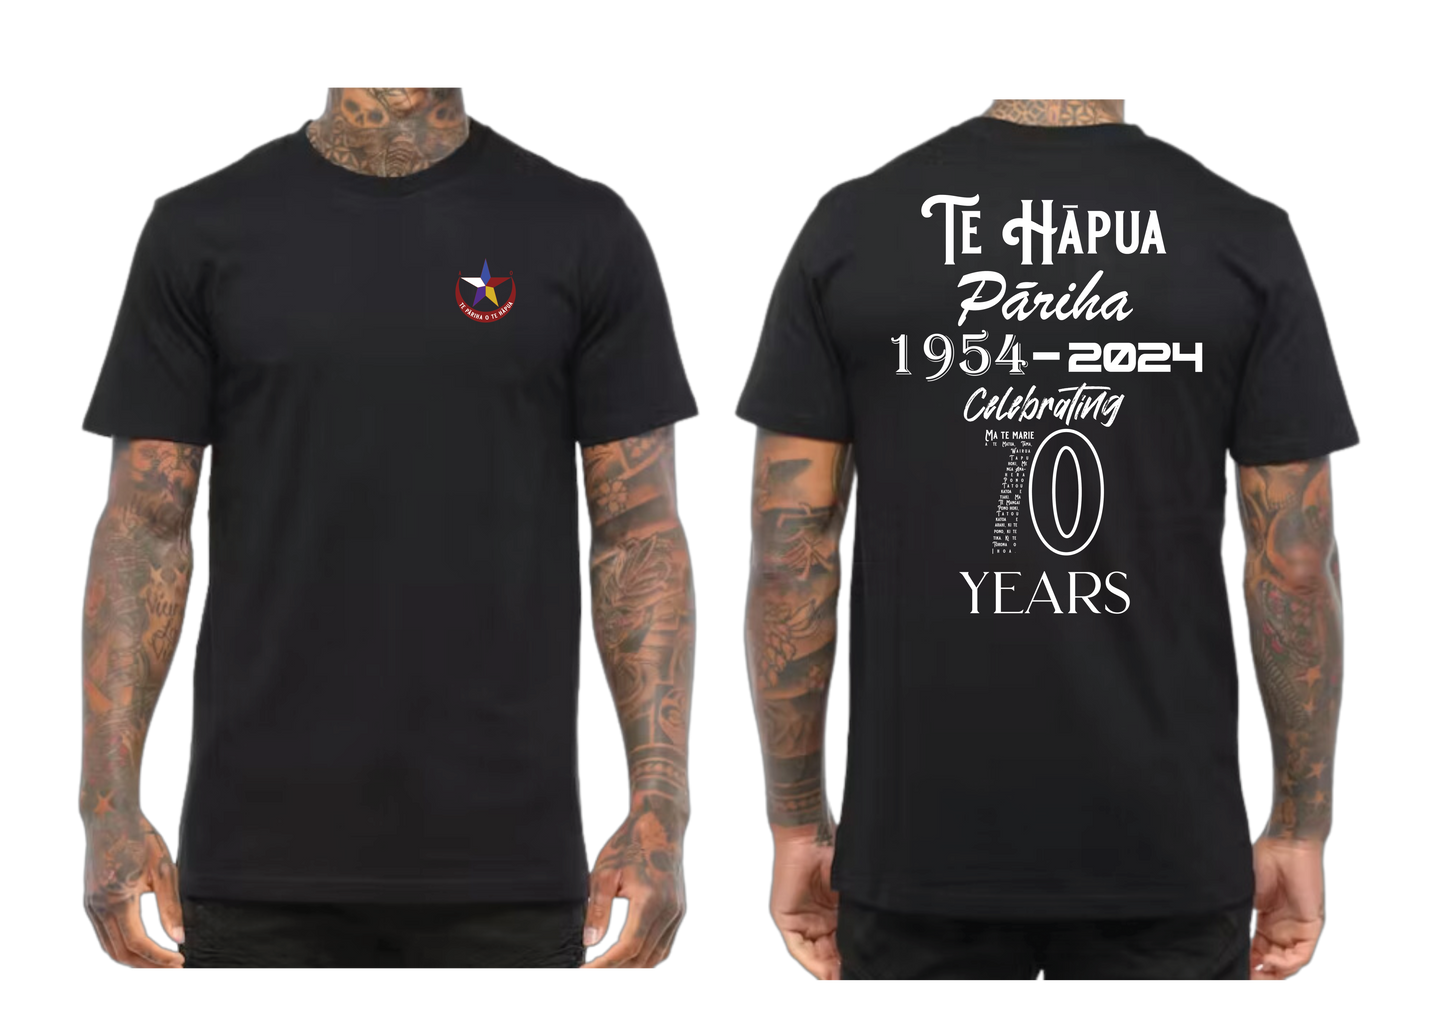 Te Reo Pōwhiri Tees - Te Hapua Pariha est 1954